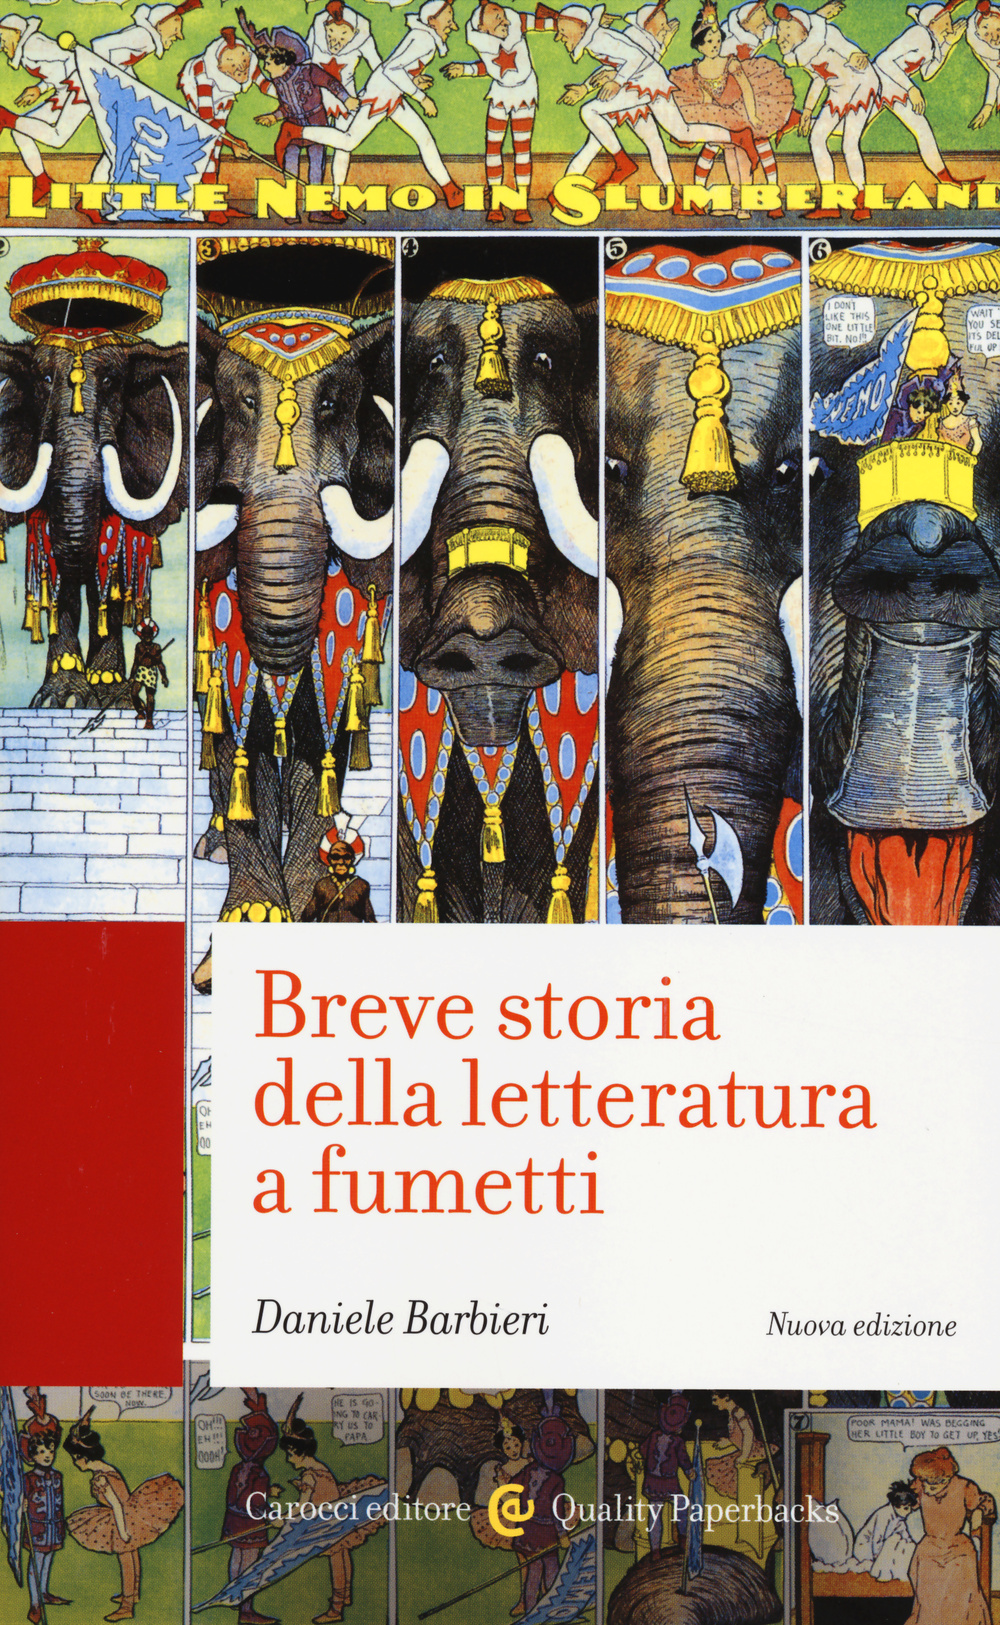 Libri Daniele Barbieri - Breve Storia Della Letteratura A Fumetti NUOVO SIGILLATO, EDIZIONE DEL 27/02/2014 SUBITO DISPONIBILE